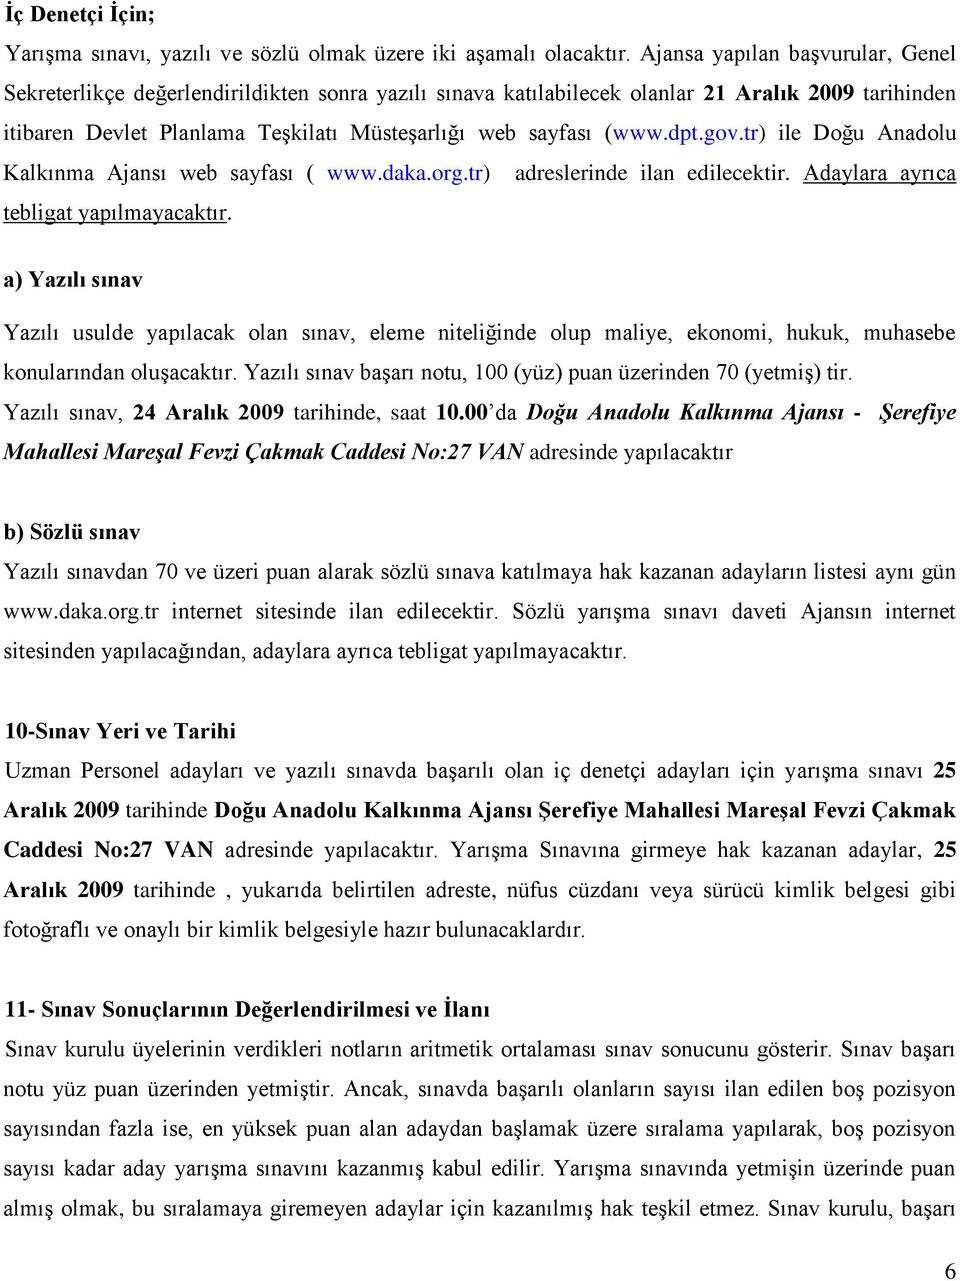 dpt.gov.tr) ile Doğu Anadolu Kalkınma Ajansı web sayfası ( www.daka.org.tr) adreslerinde ilan edilecektir. Adaylara ayrıca tebligat yapılmayacaktır.